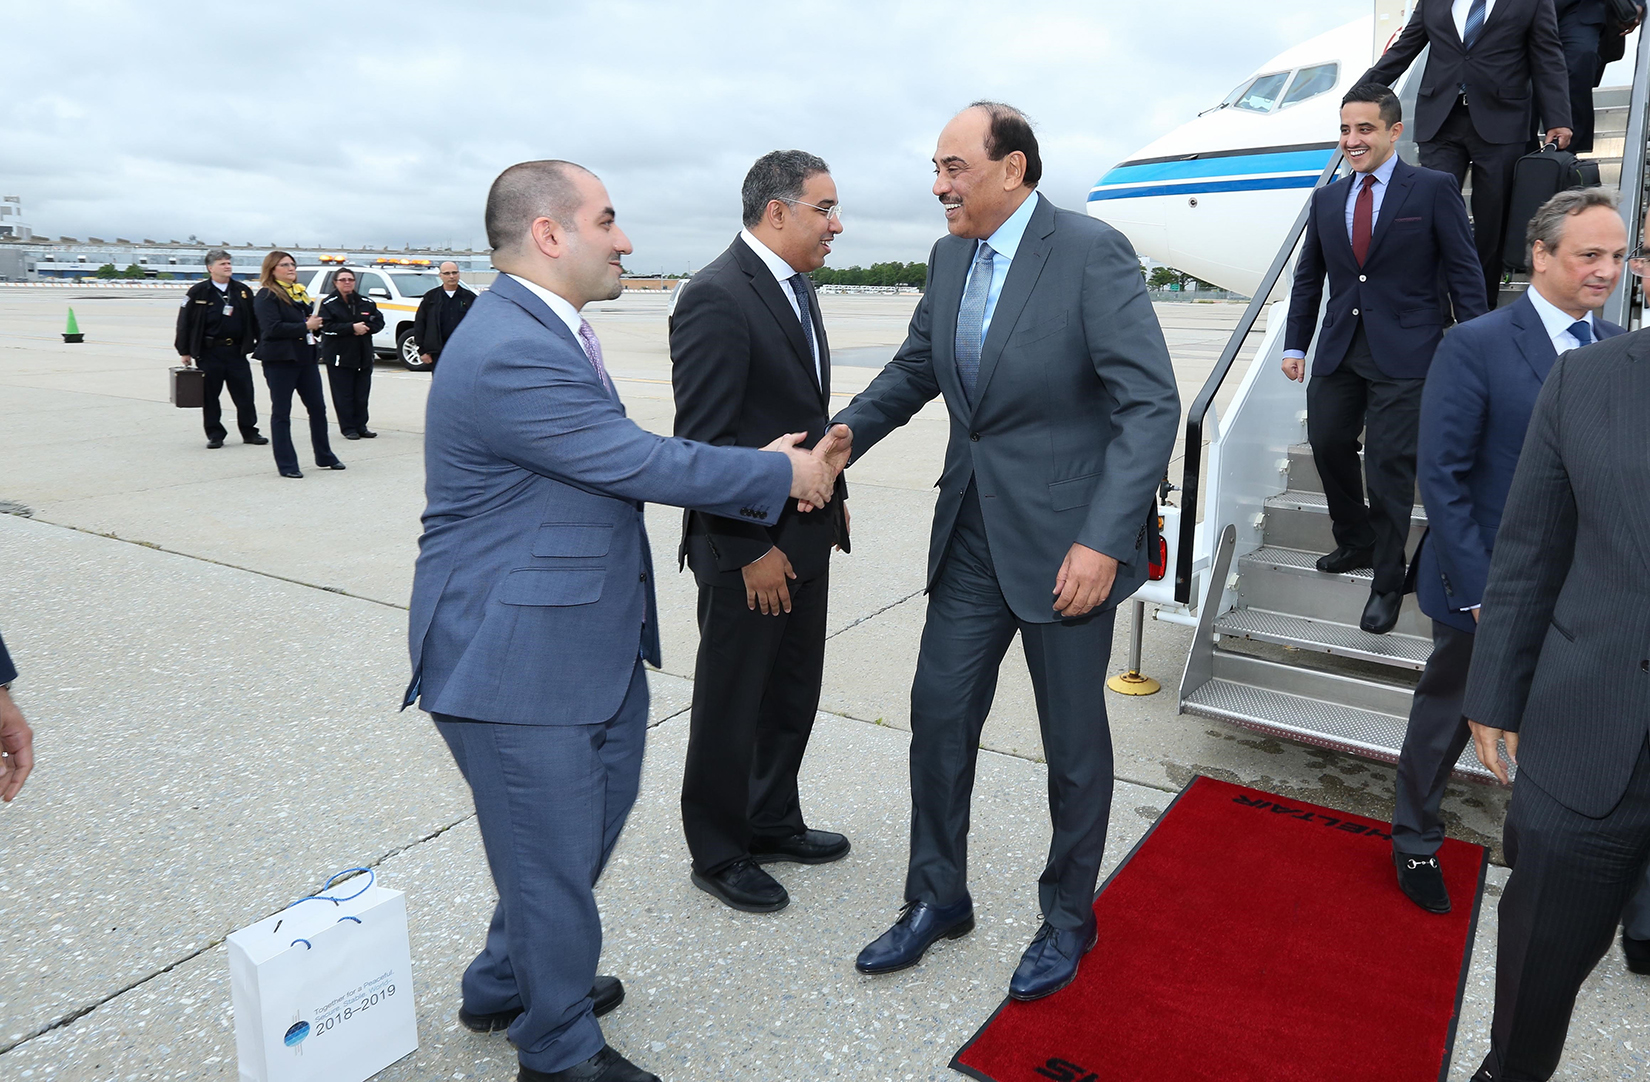 وزير الخارجية الشيخ صباح خالد الحمد الصباح لدى وصوله إلى نيويورك للمشاركة في جلسة الجمعية العامة للأمم المتحدة